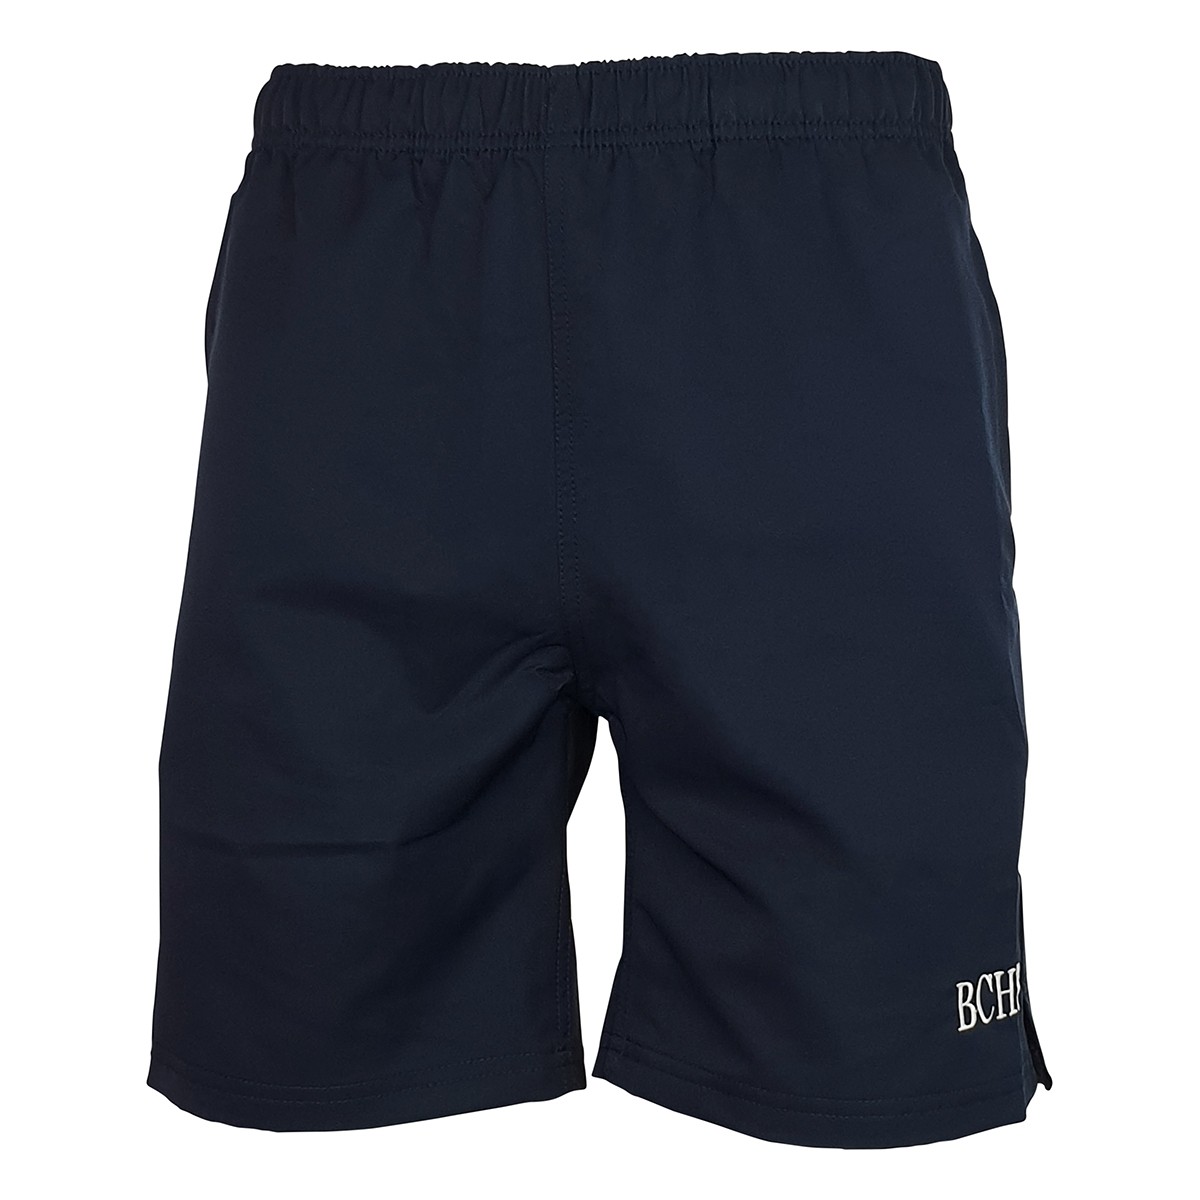 Sport Shorts W/ Embroidery Unisex - School Locker